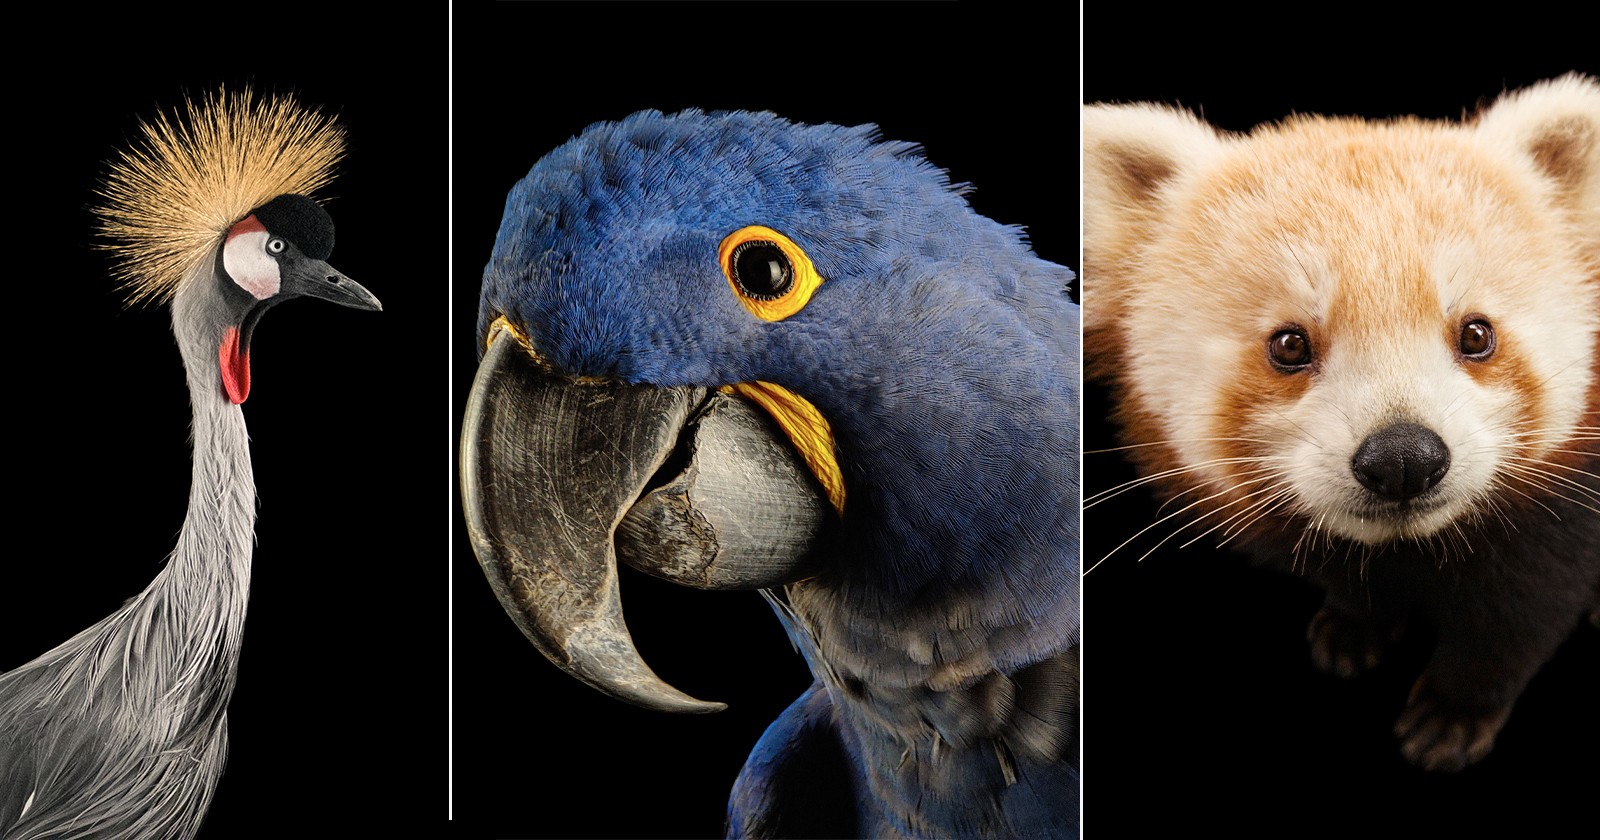 این مجموعه عکس NatGeo رنگ حیوانات در معرض خطر را گرامی می دارد